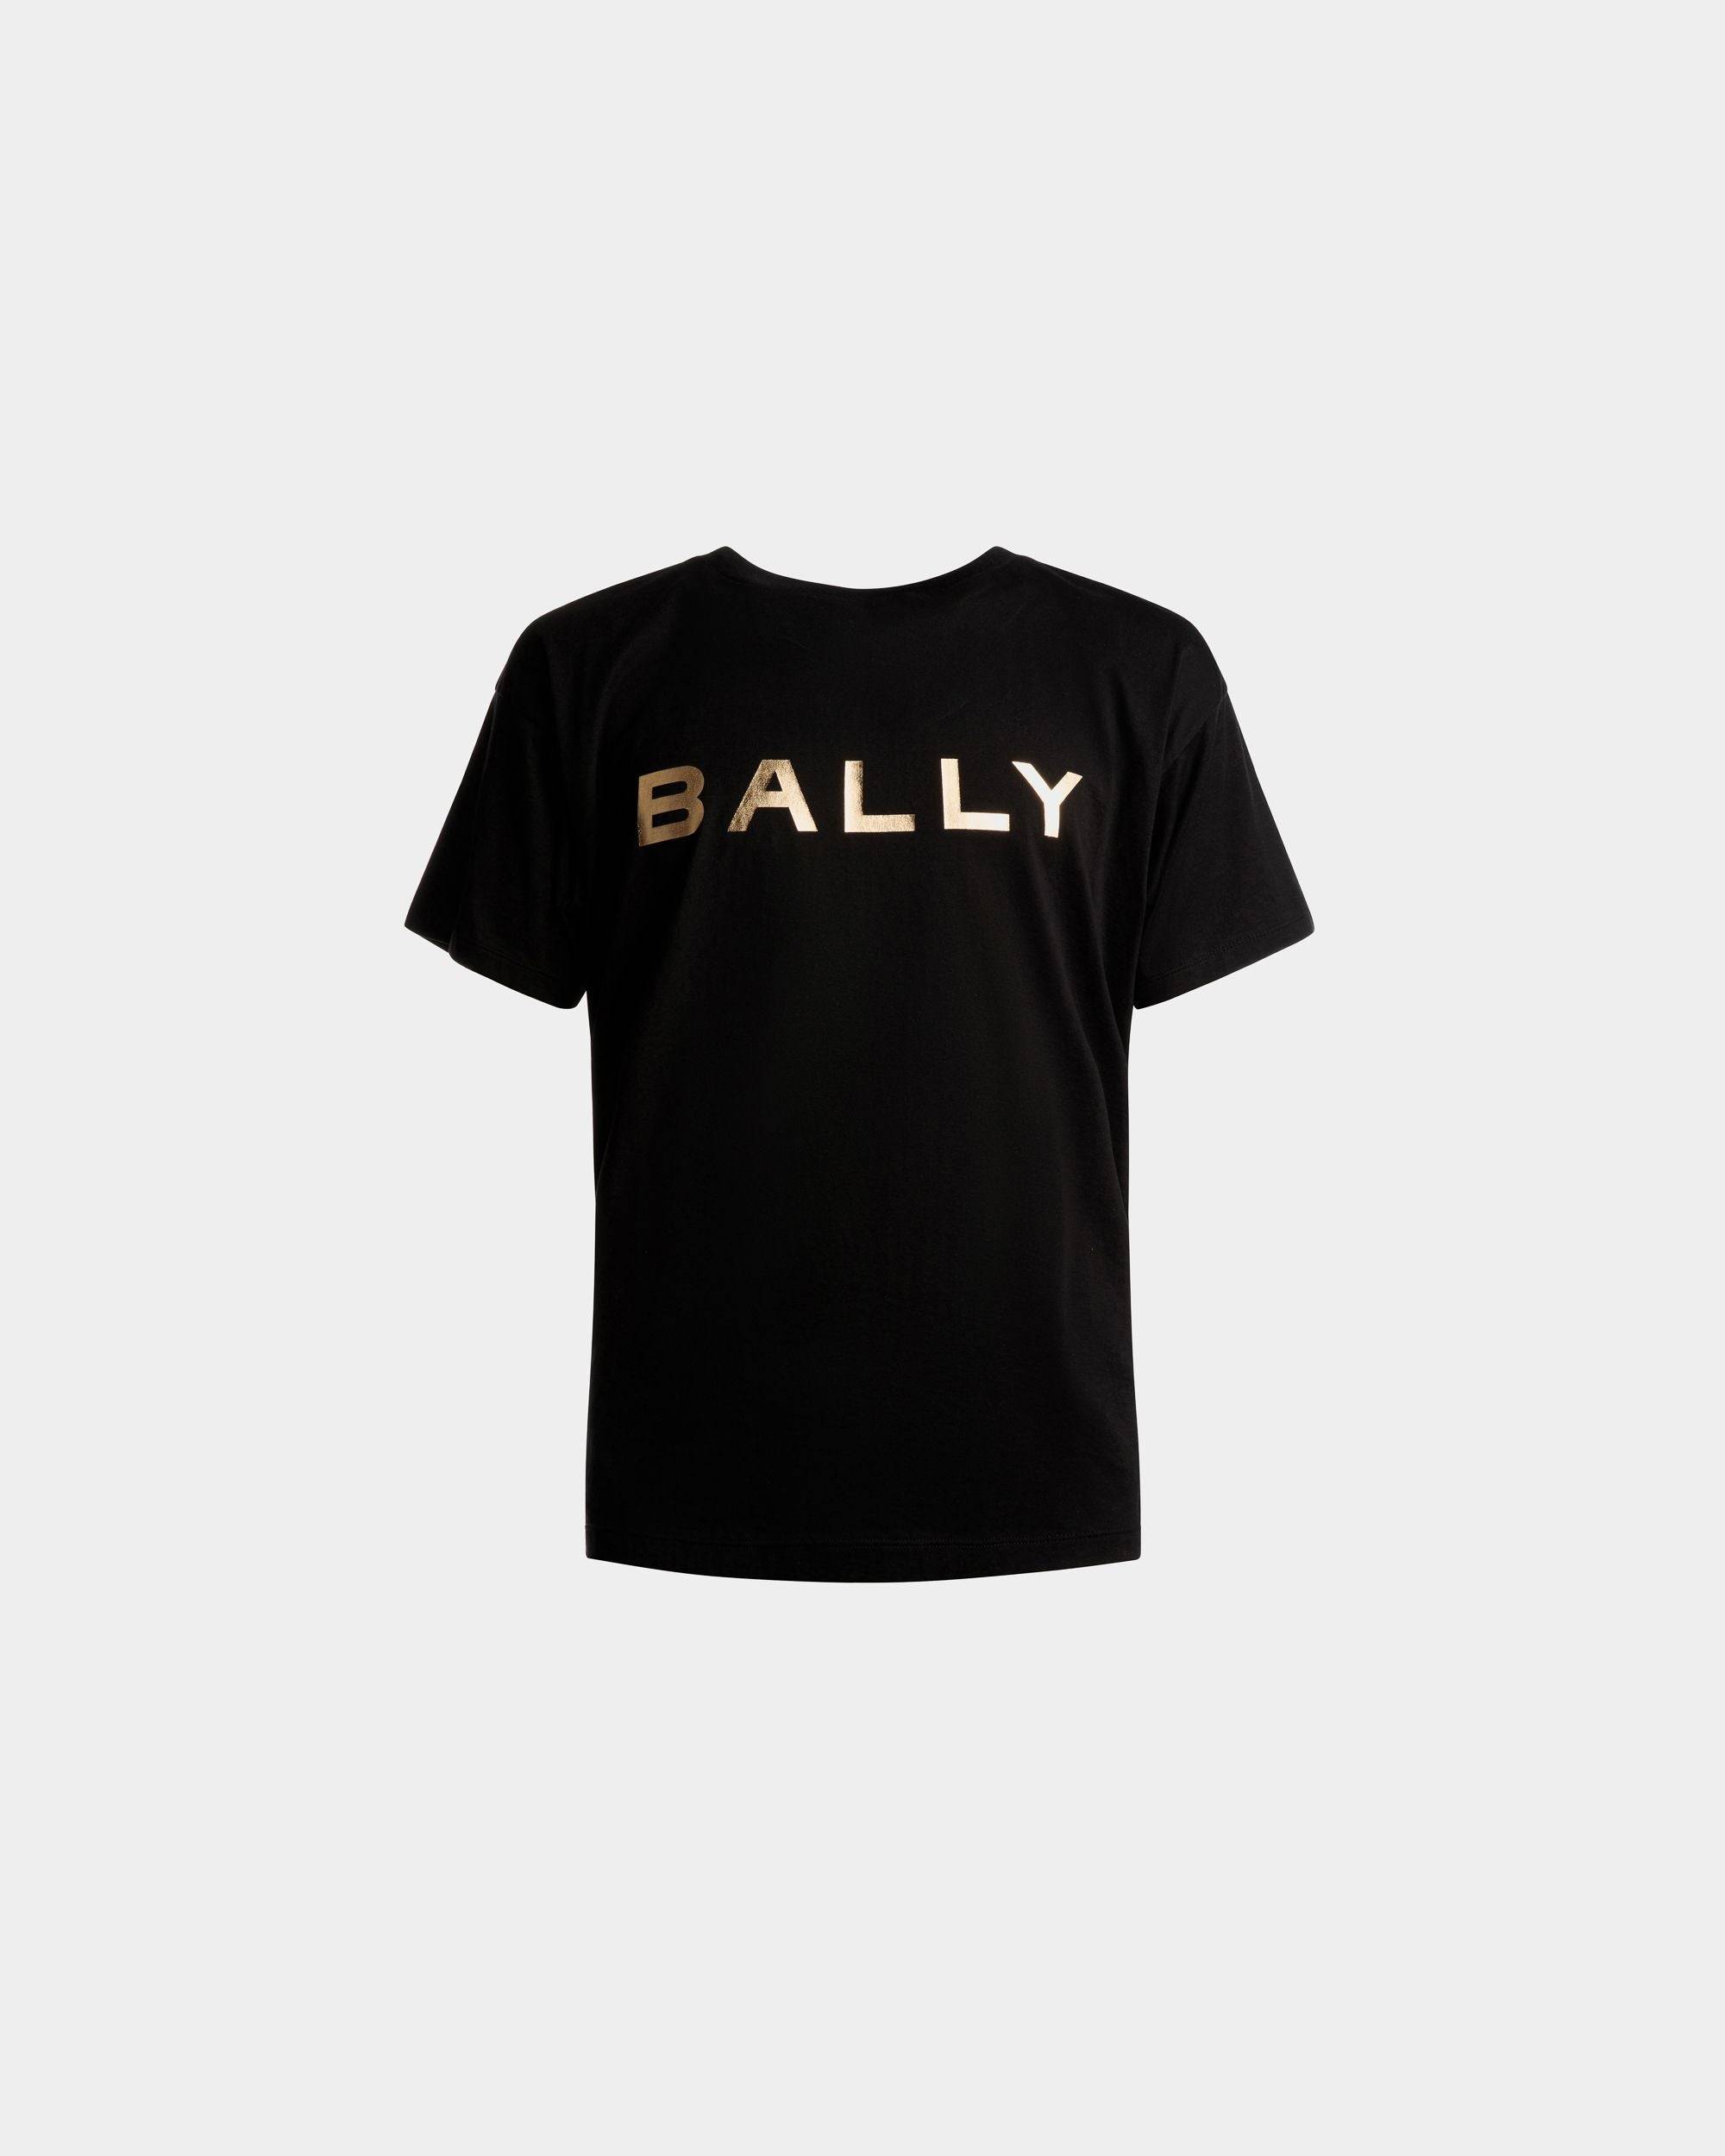 Tシャツ/カットソー(半袖/袖なし)BALLY メンズ Tシャツ - Tシャツ